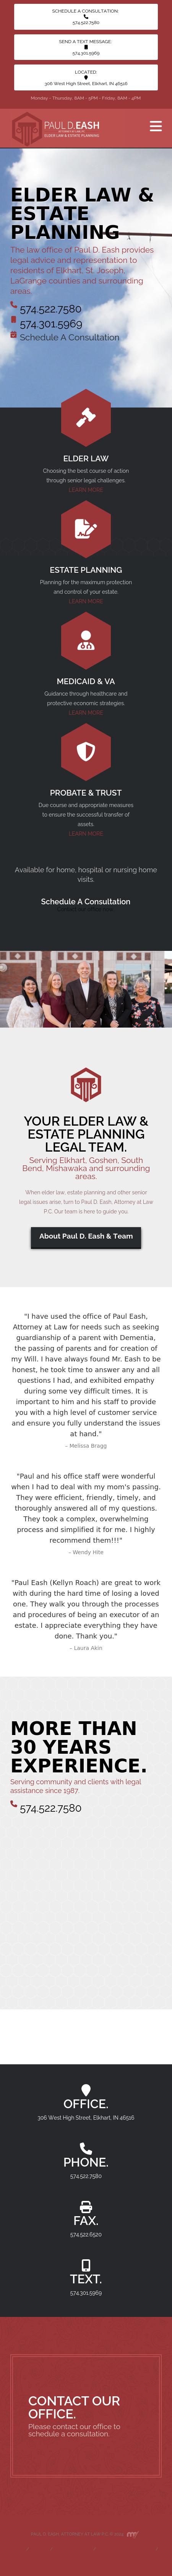 Paul D. Eash - Elkhart IN Lawyers